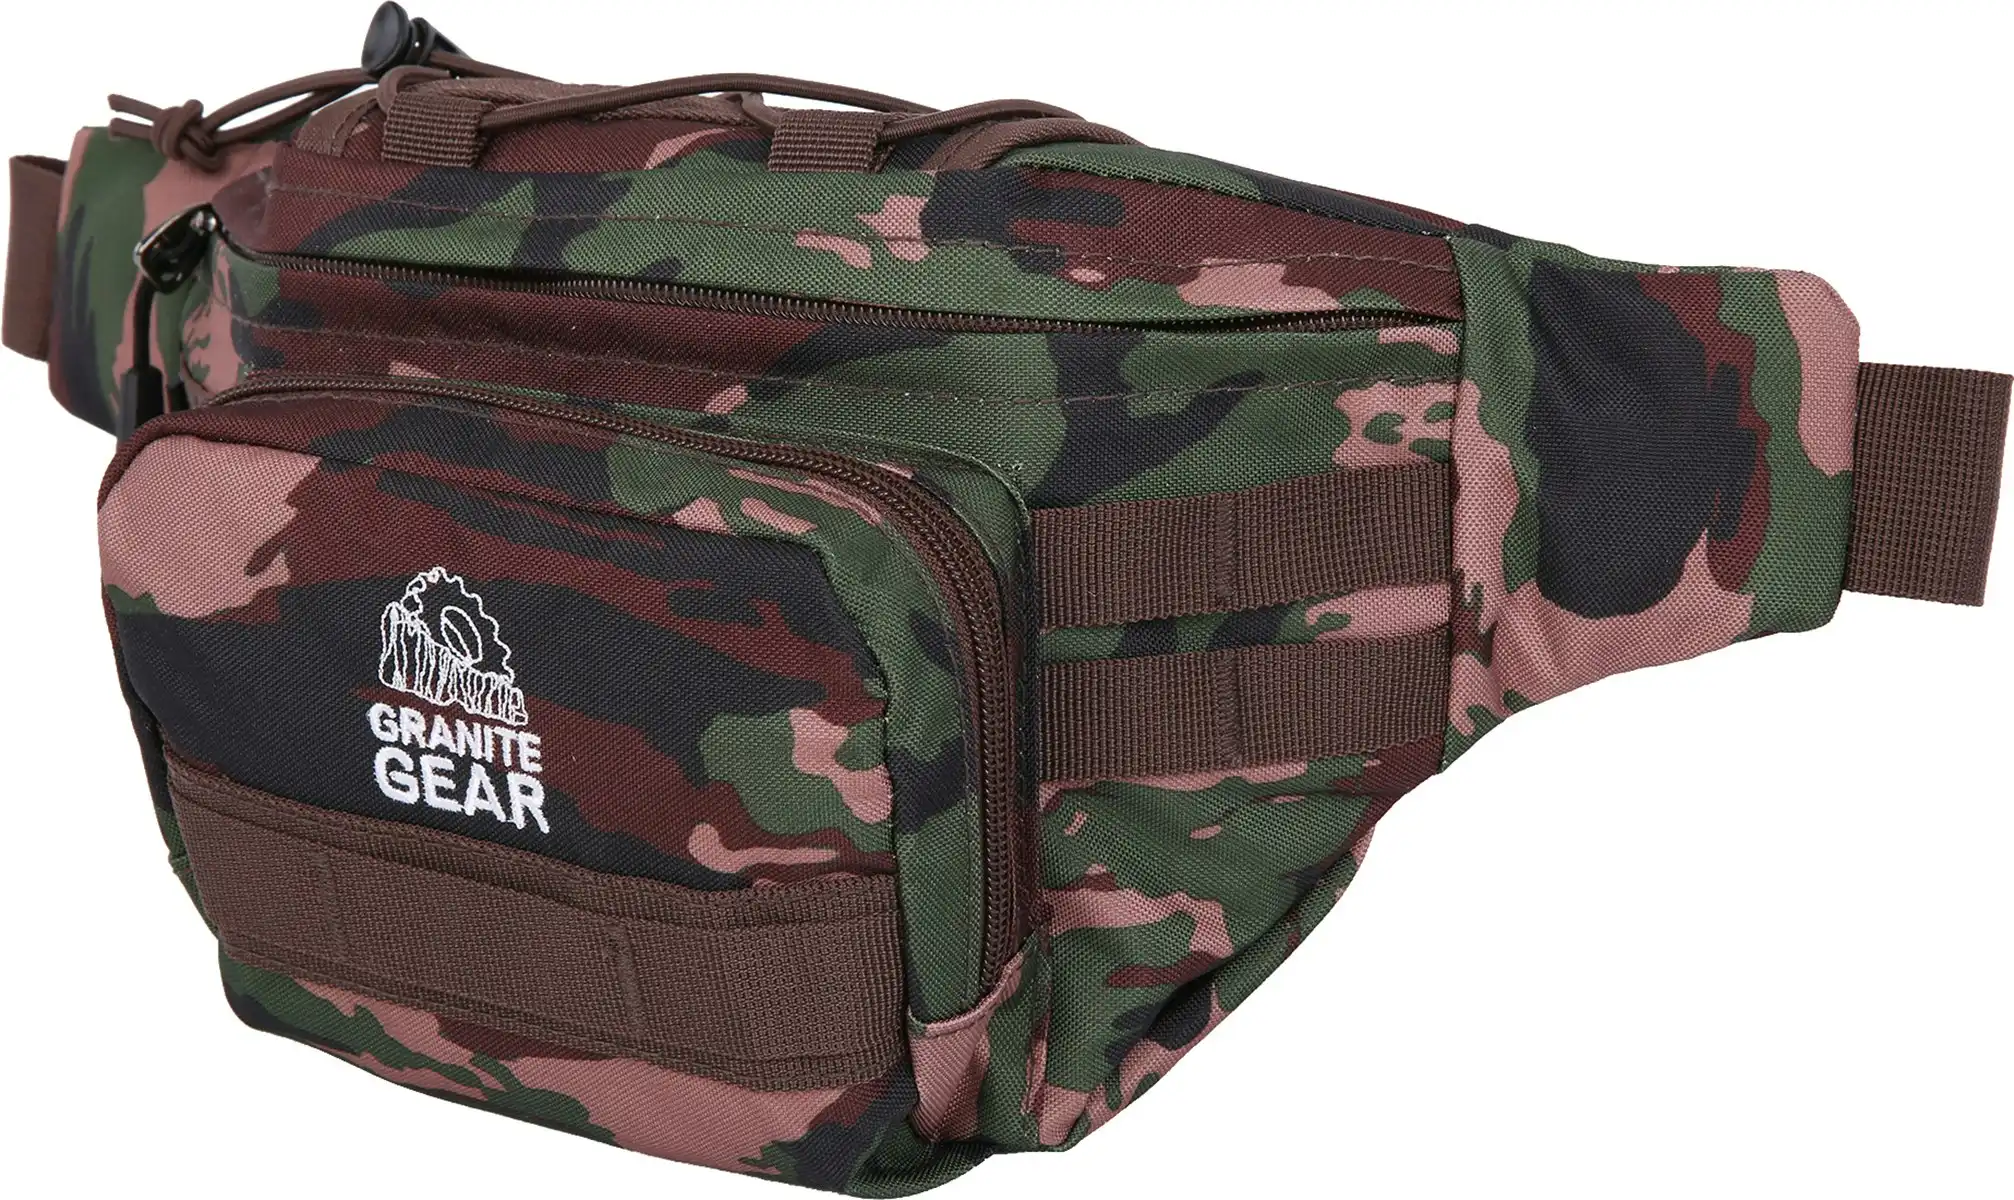 Granite Gear Waterproof Funny Bag Travel Bum Bag Camping Hiking Cross Shoulder Bag G7557 Camouflage